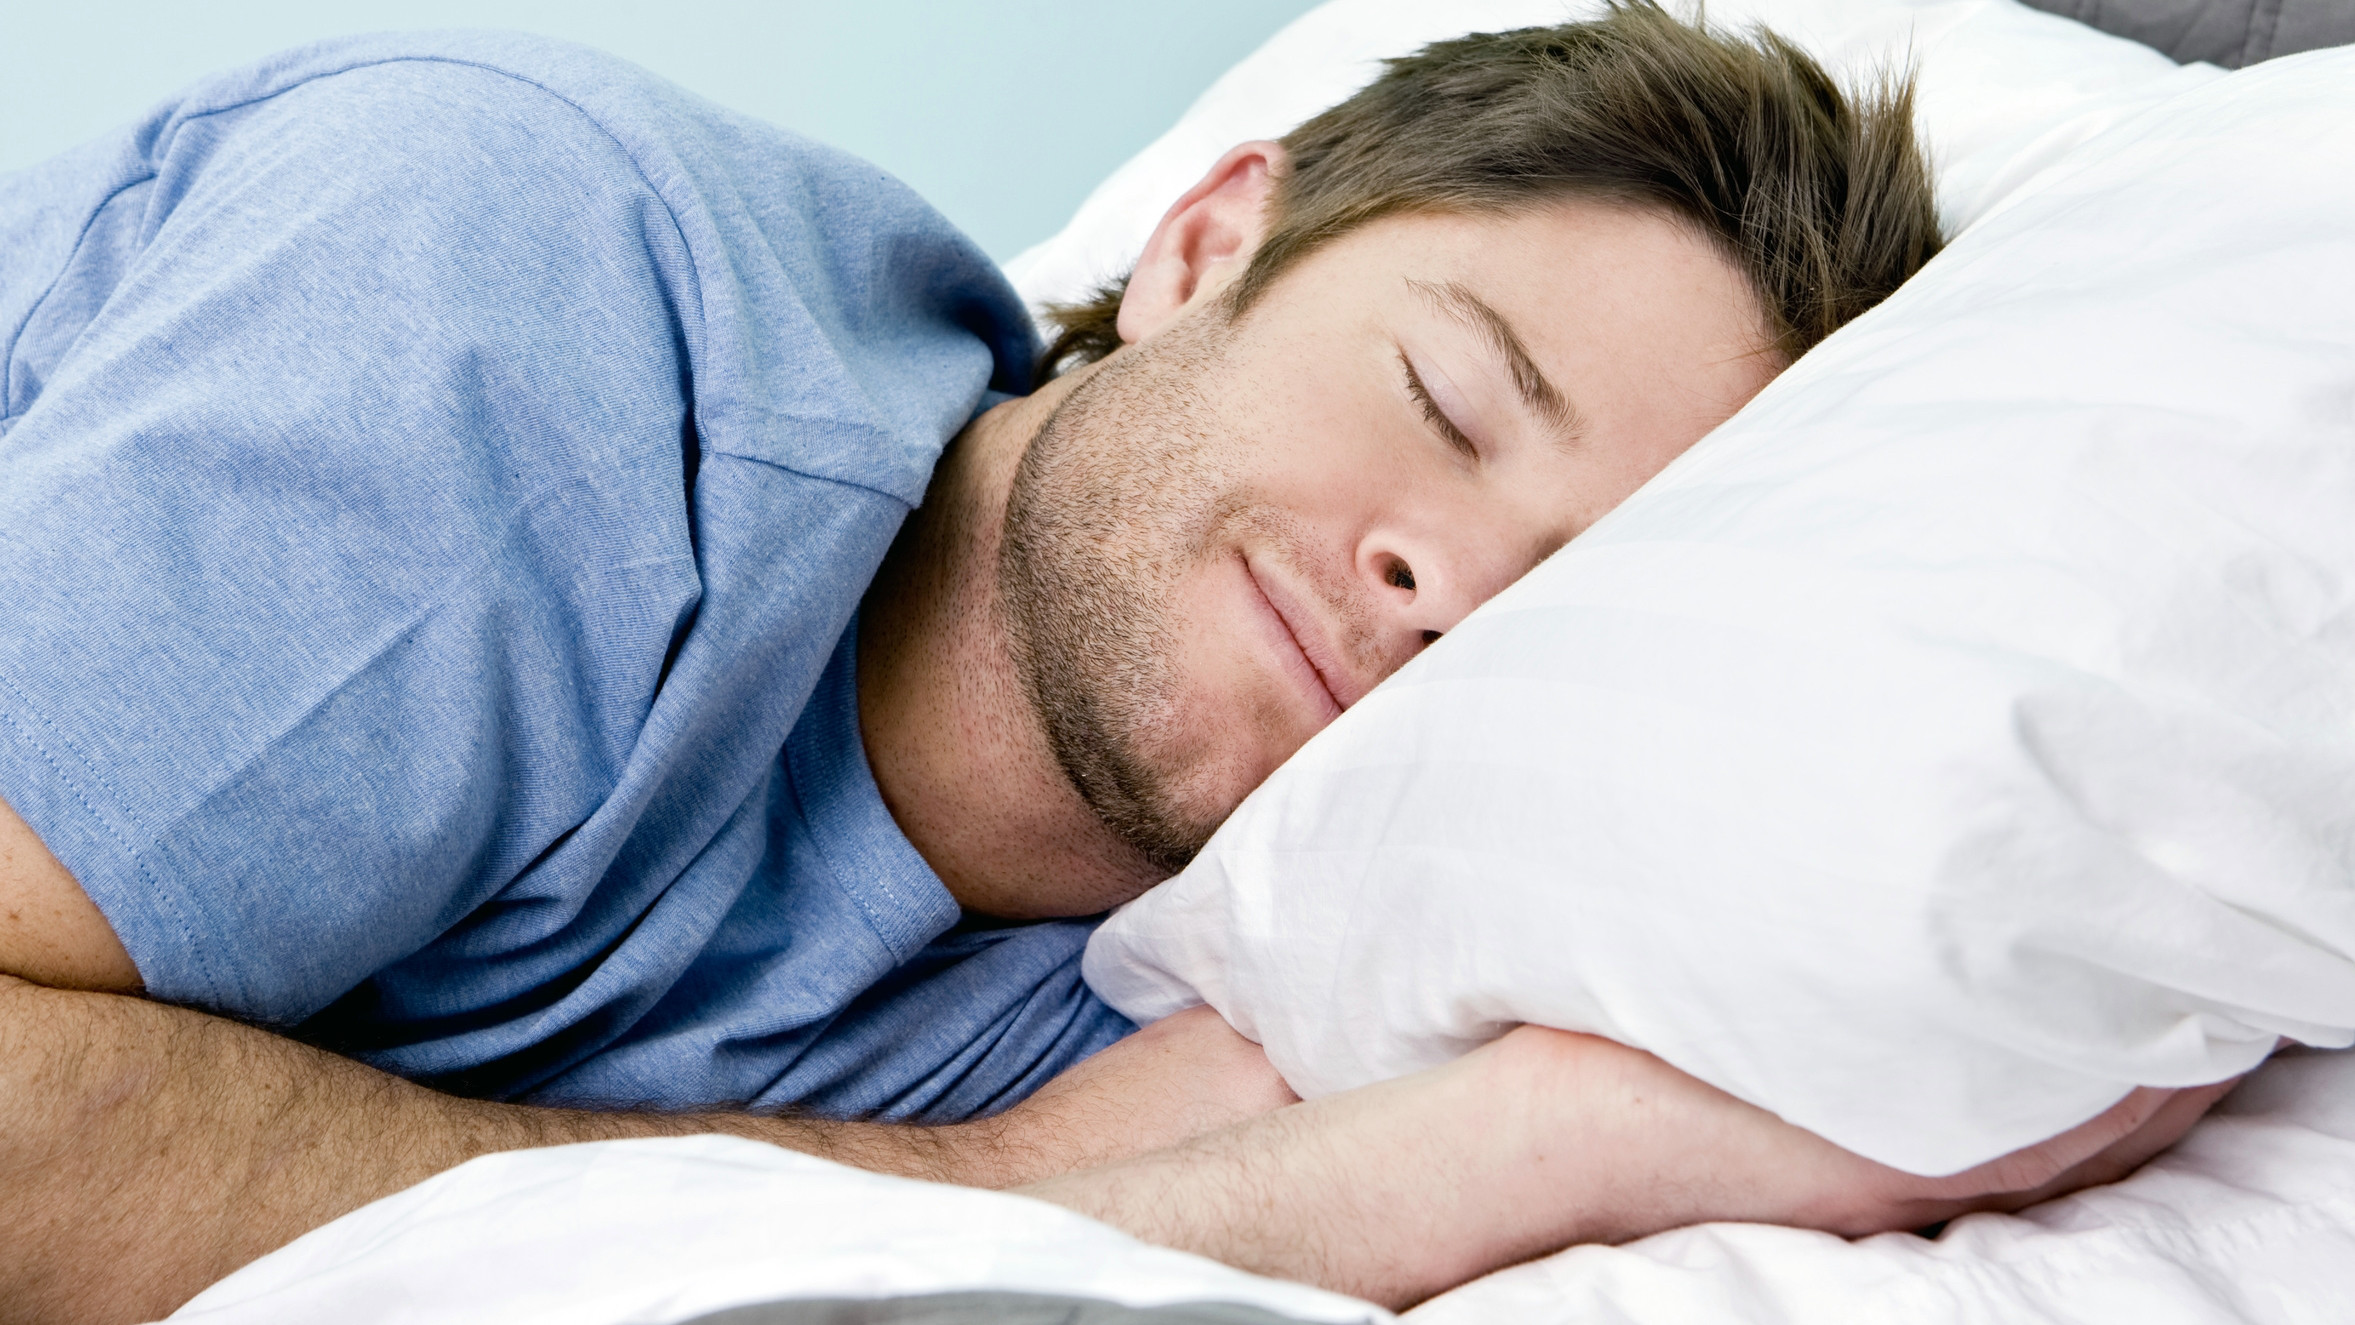 Лікар назвав спосіб швидше засинати та бачити більше снів